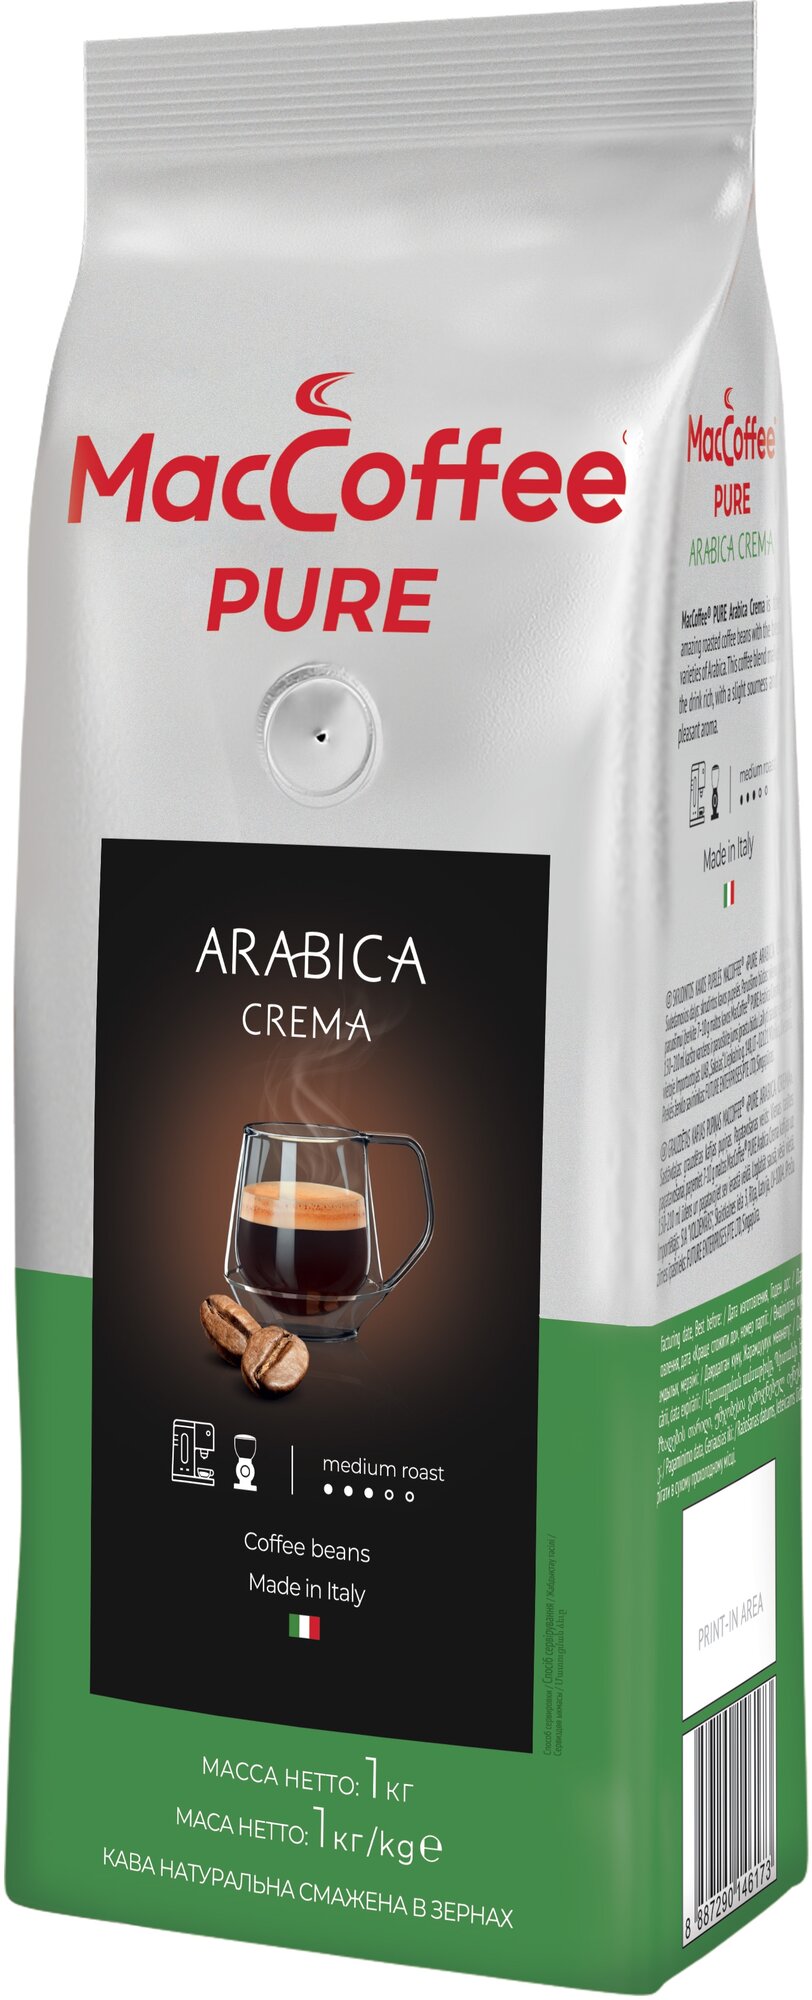 Кофе в зернах MacCoffee Pure Arabica Crema 1кг - фото №2